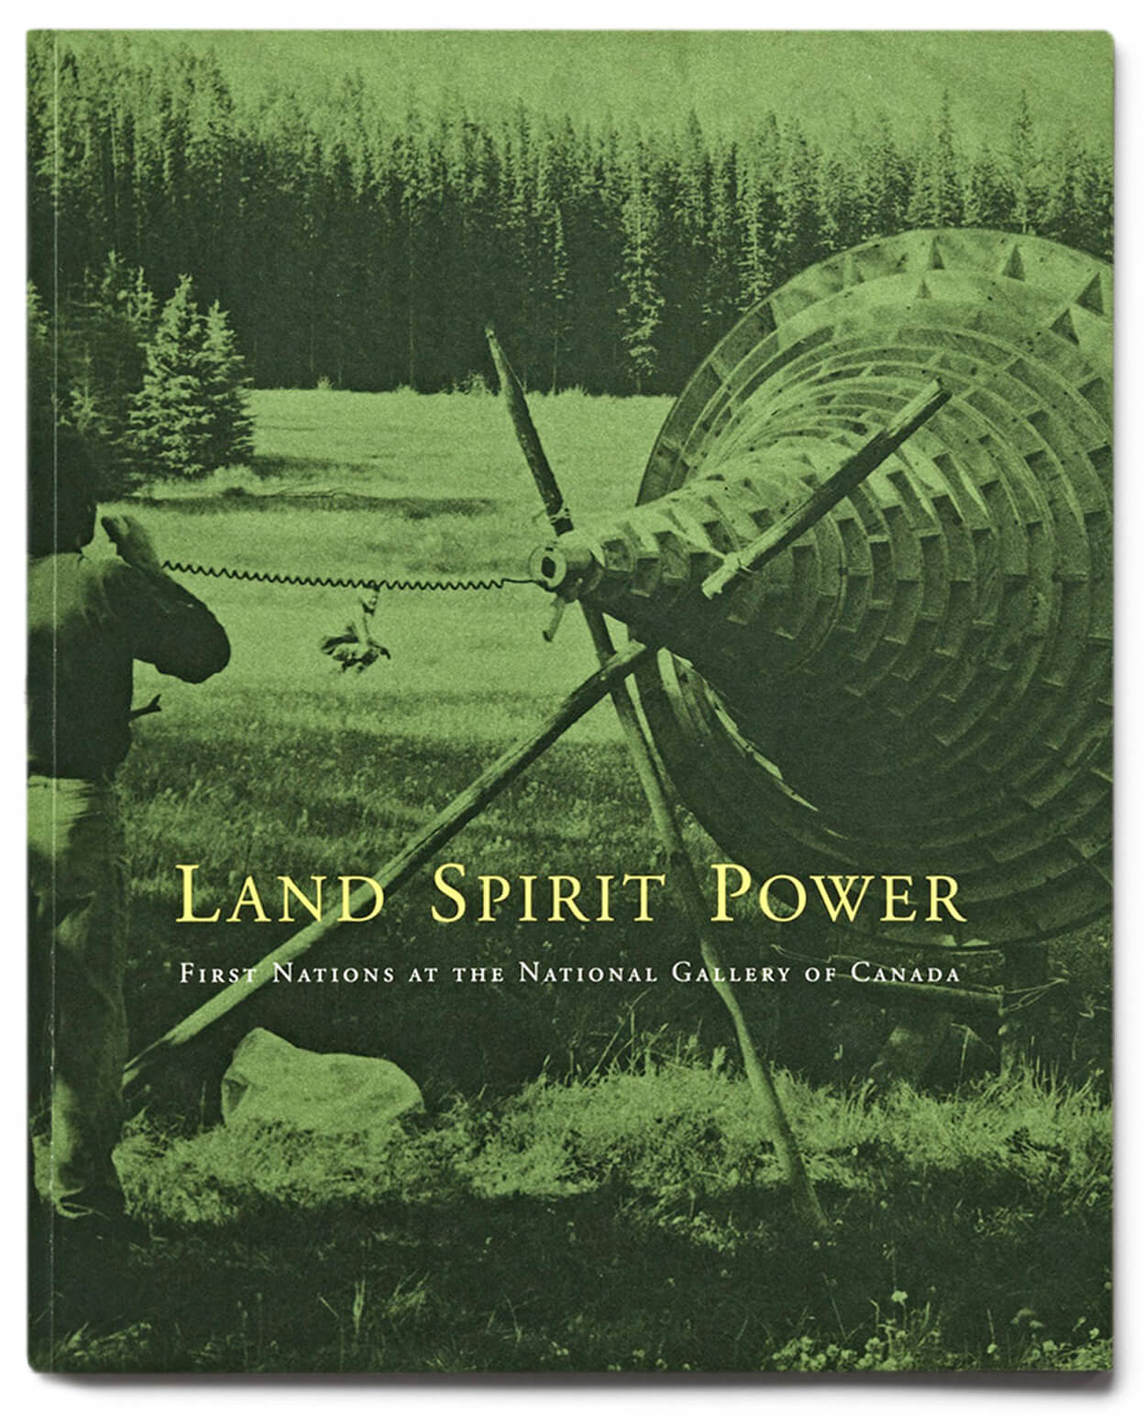 Page couverture du catalogue de l’exposition Land, Spirit, Power (Terre, esprit, pouvoir), 1992